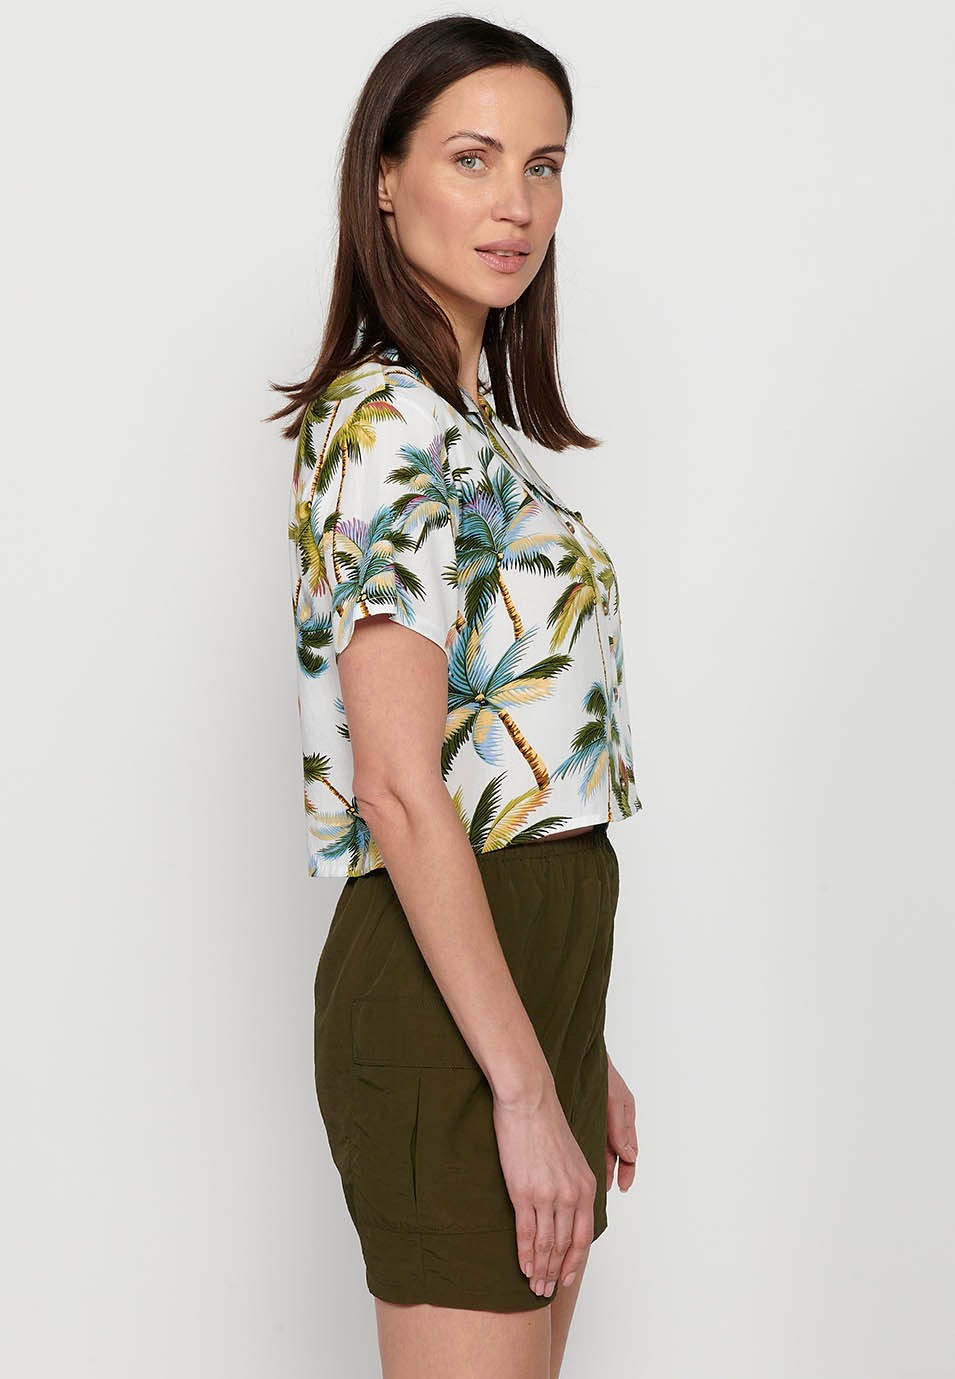 Chemisier à manches courtes et col de chemise à revers multicolore pour femmes, imprimé Floral